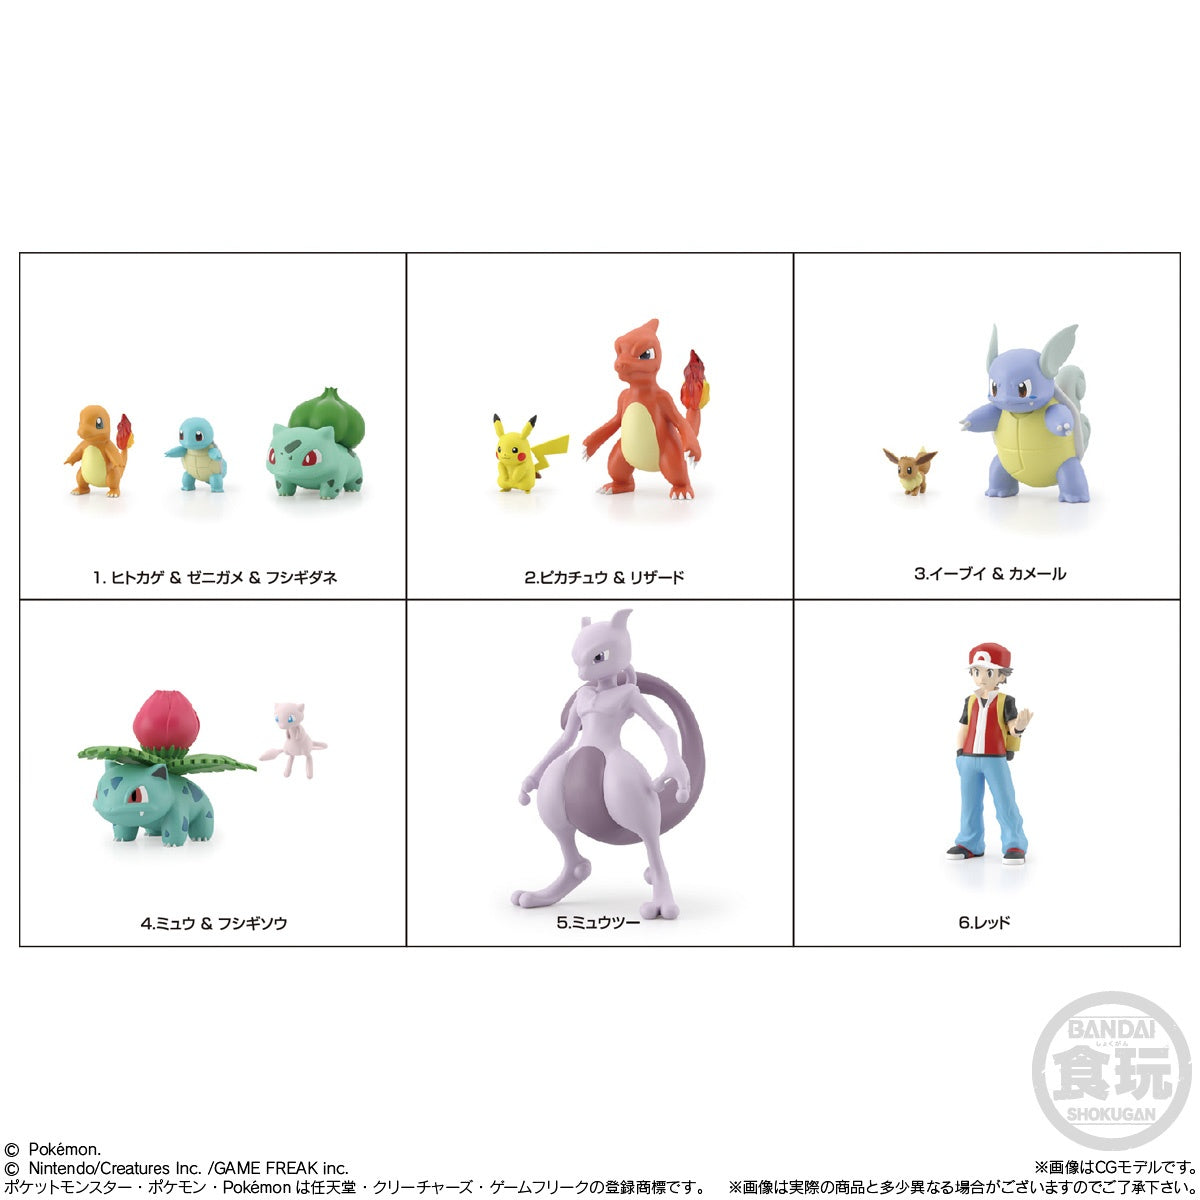 Bandai - Shokugan - Pokemon Scale World - Kanto Region - Set 1 (Reissue) - Marvelous Toys